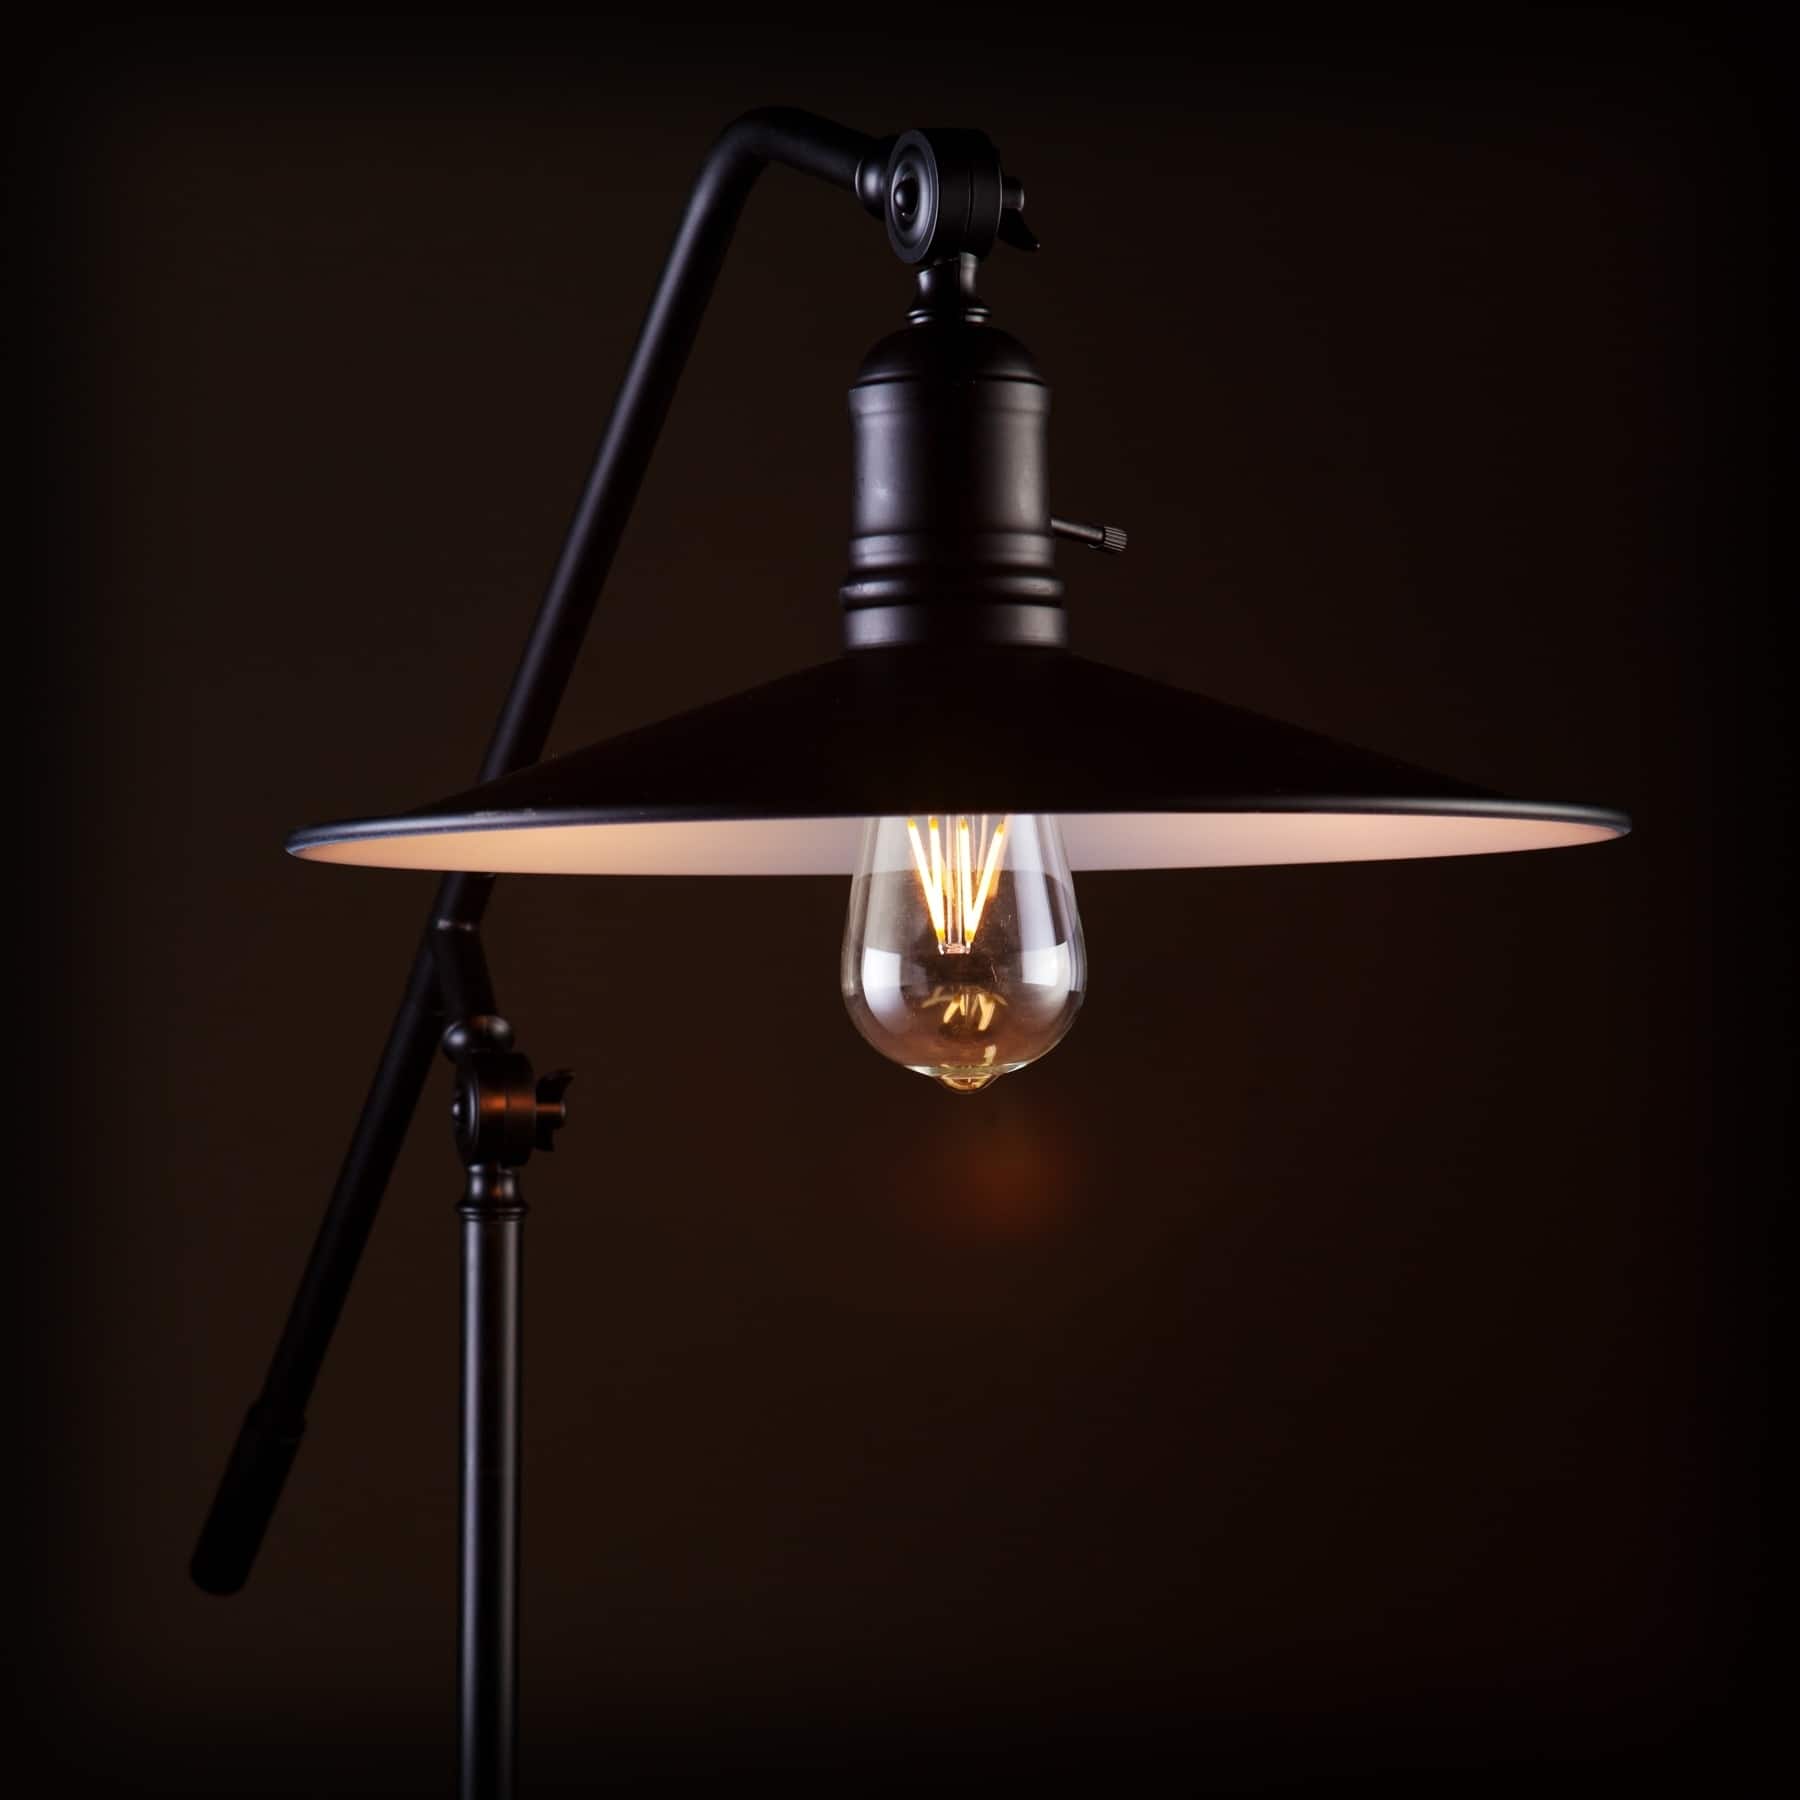 Buy Floor Lamps Online at Overstock.com | Our Best Lighting Deals